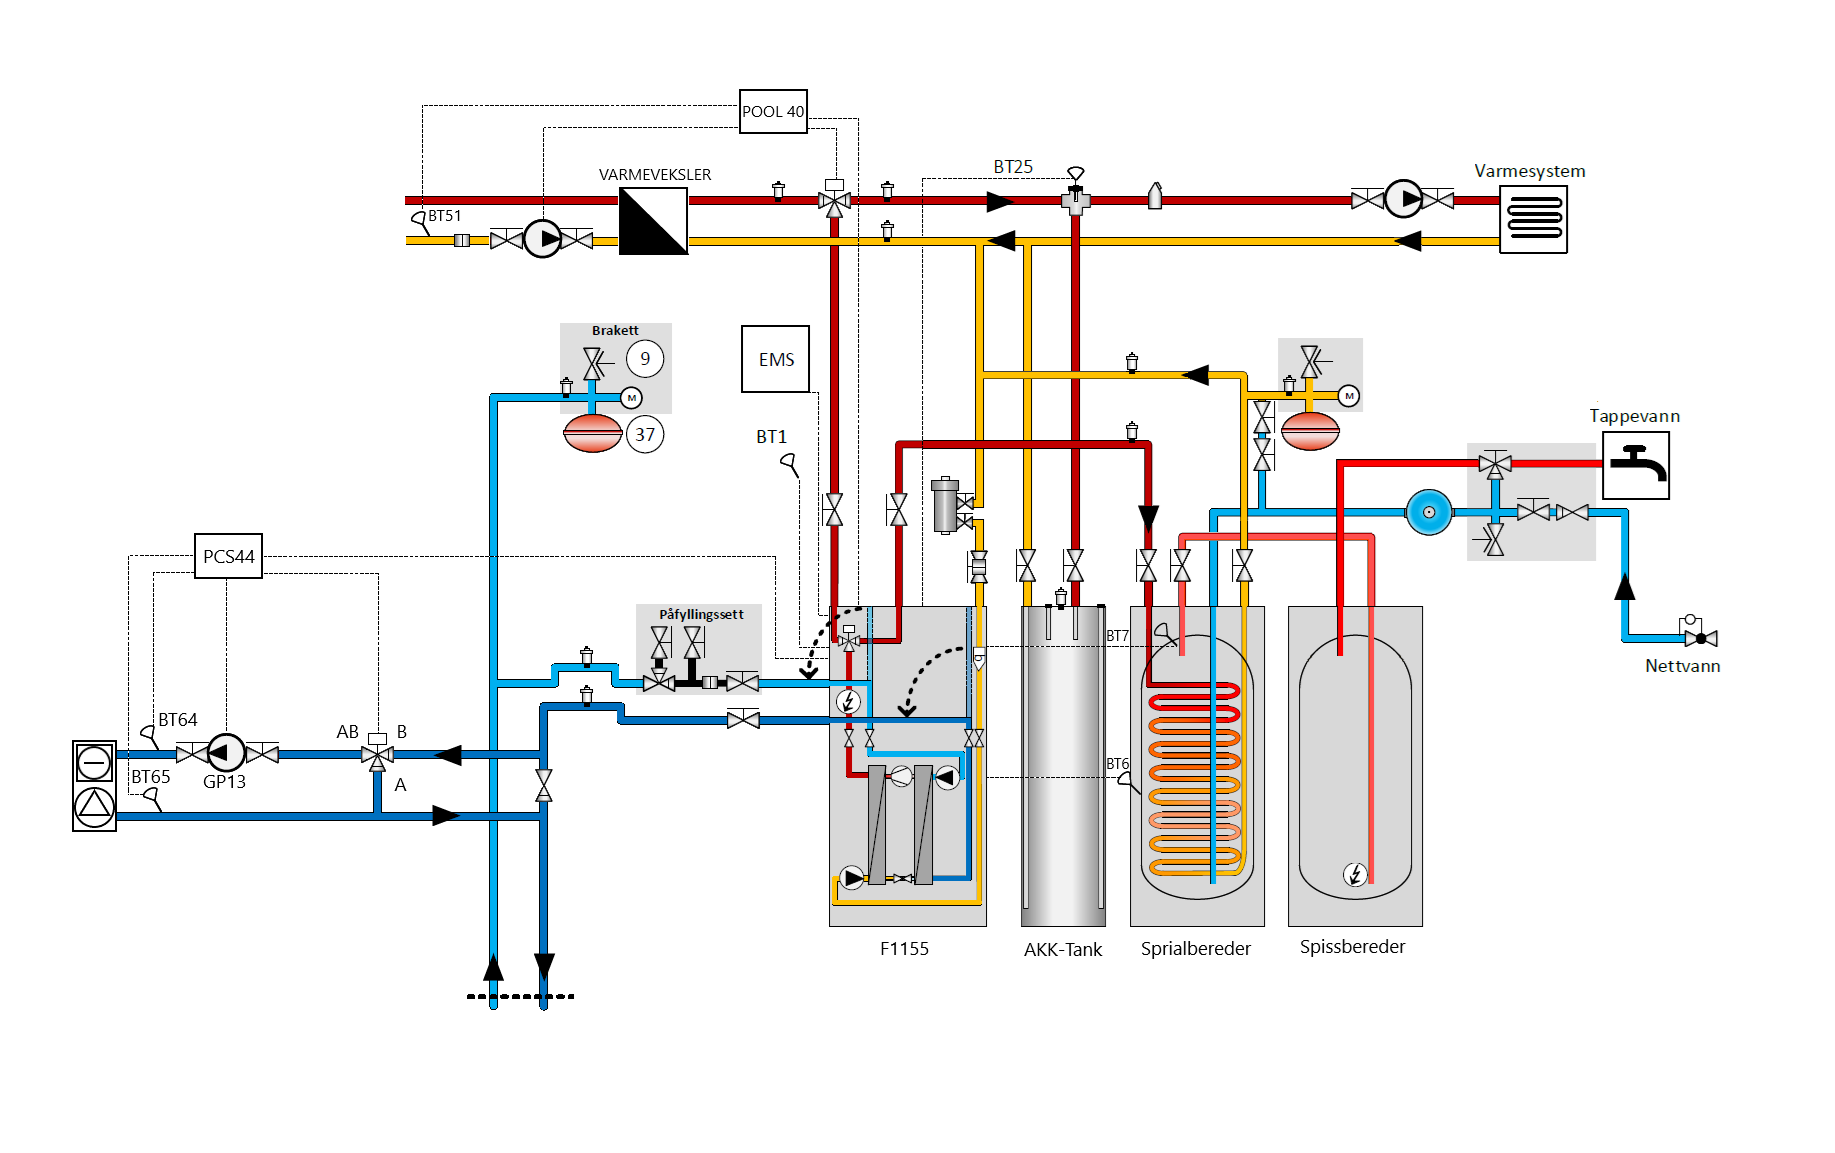 Presentasjon av bergvarmepumpe 16 kW (Nibe S1155-16 EM 3x400V) - F1155 +Akk + Spiral + Spiss + Frikjøling +Pool (1).png - eivindcom